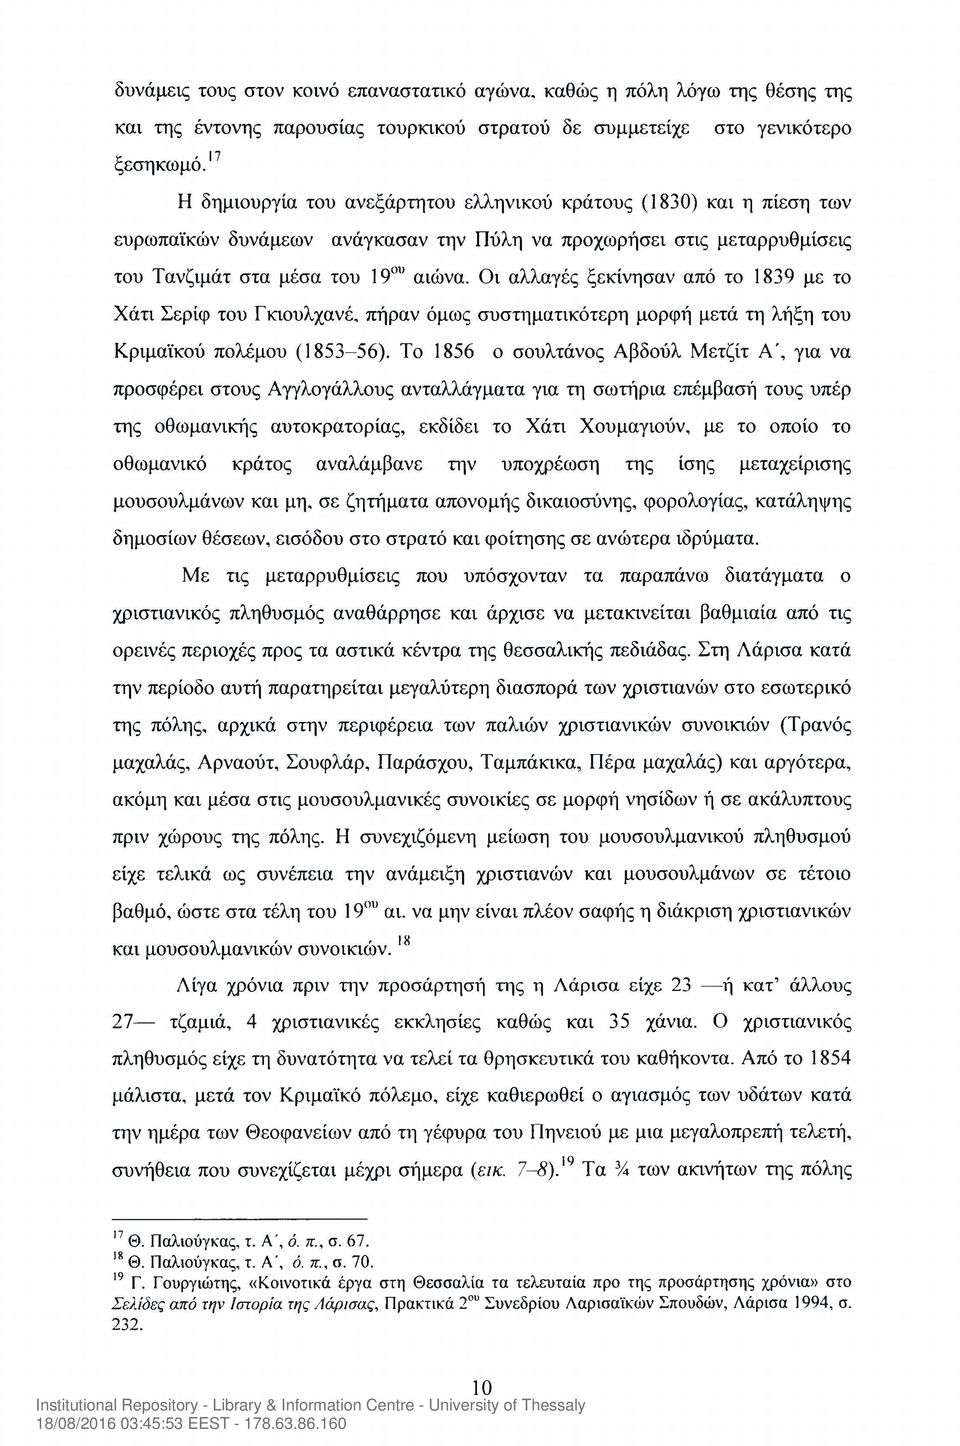 Οι αλλαγές ξεκίνησαν από το 1839 με το Χάτι Σερίφ του Γκιουλχανέ, πήραν όμως συστηματικότερη μορφή μετά τη λήξη του Κριμαϊκού πολέμου (1853-56).